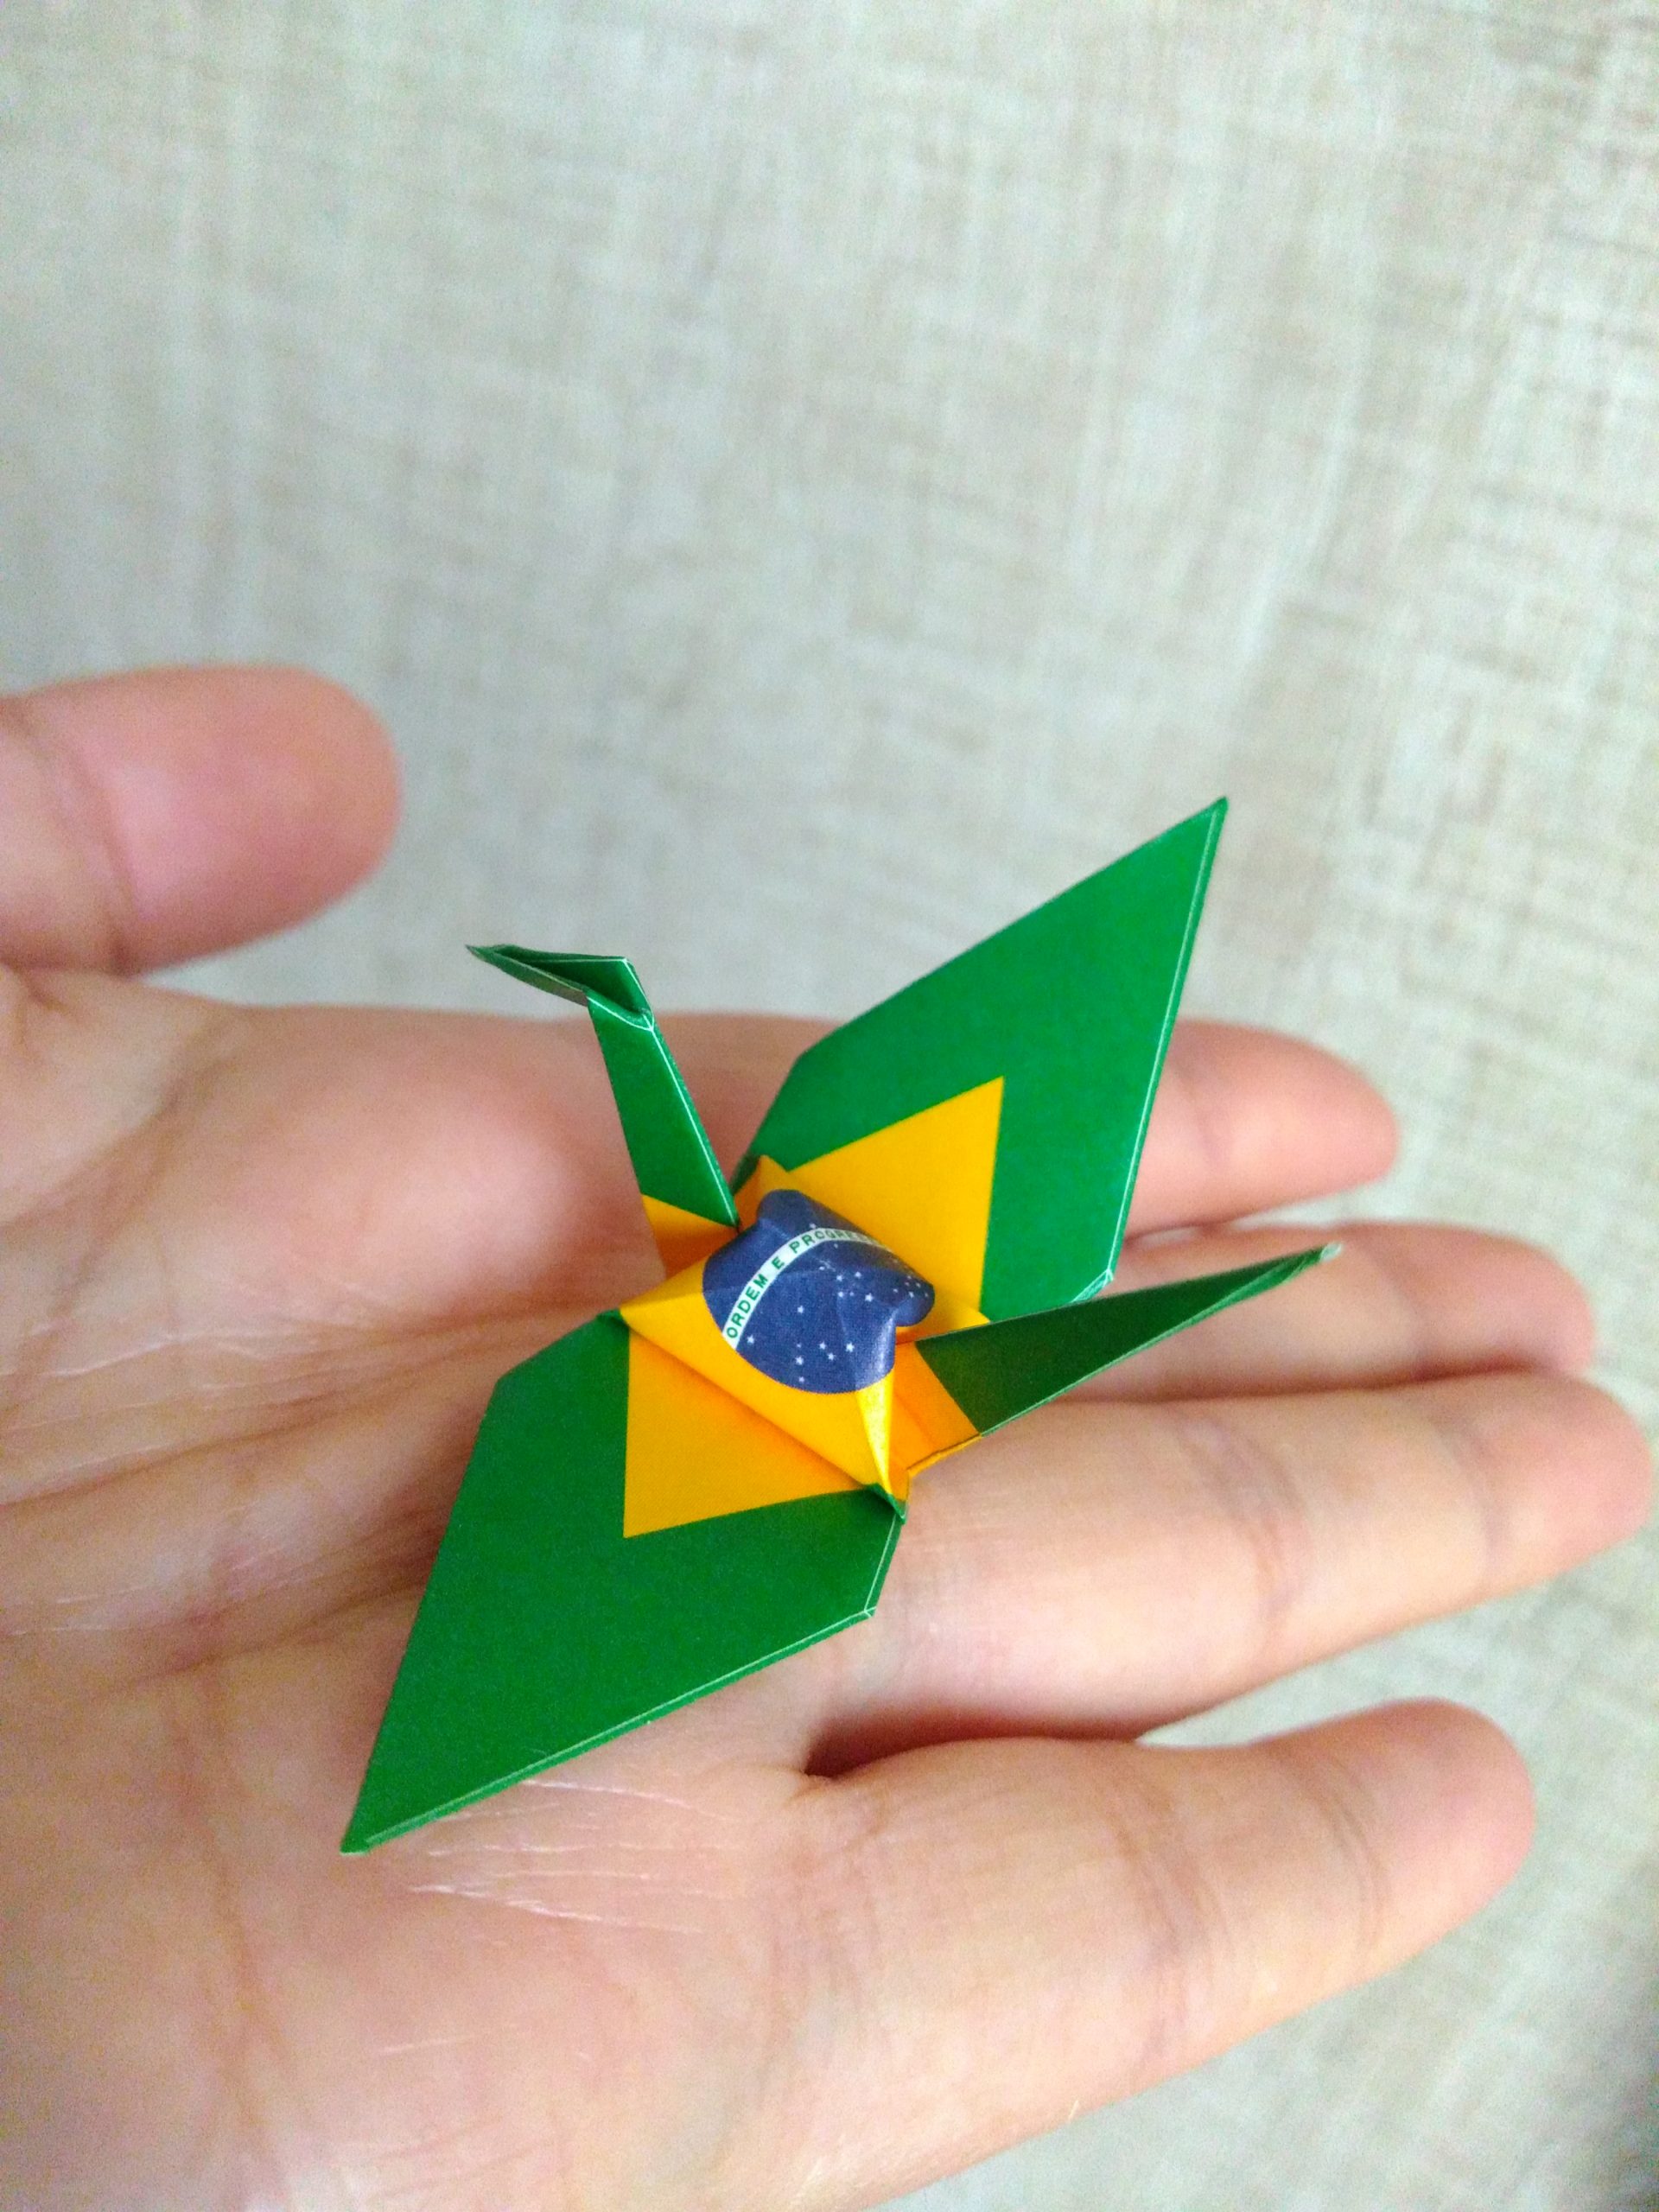 Yuki, origamista, Pelotas, RS